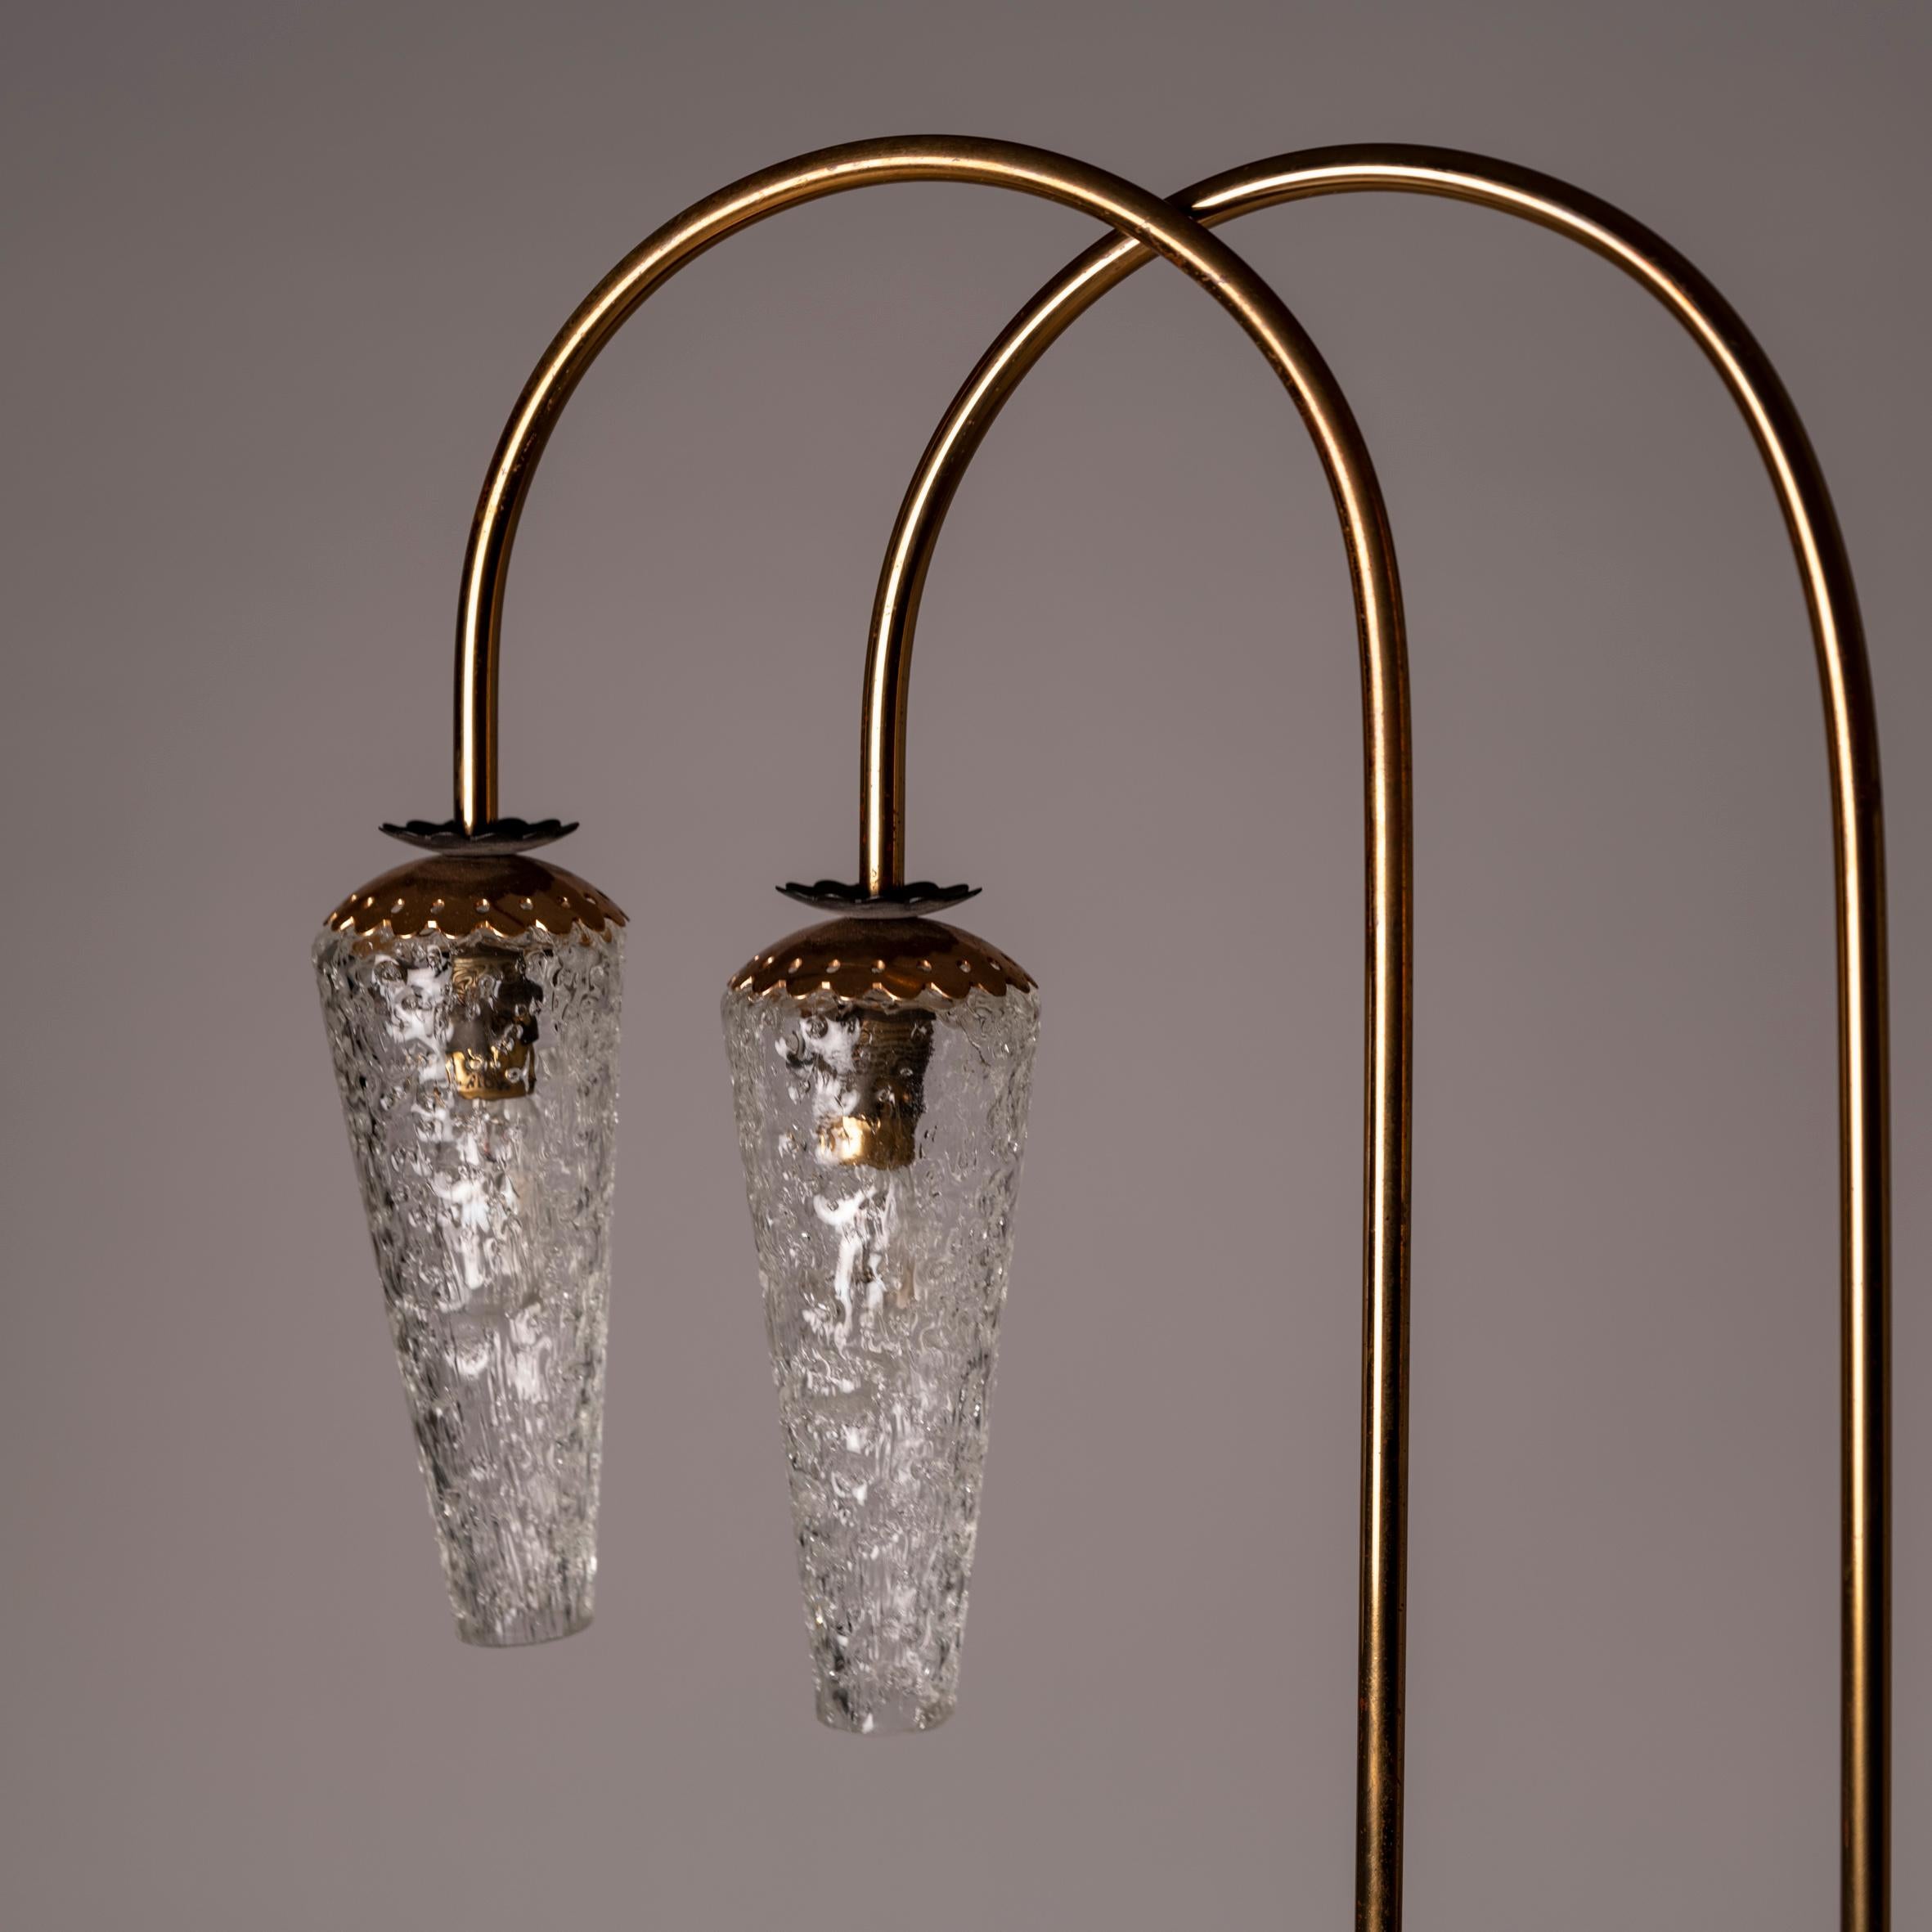 Ce petit lampadaire français en laiton et en verre attribué à Eleg et datant des années 1950 est un choix convaincant pour ceux qui cherchent à rehausser leur intérieur avec une élégance intemporelle et une sophistication discrète. L'association du